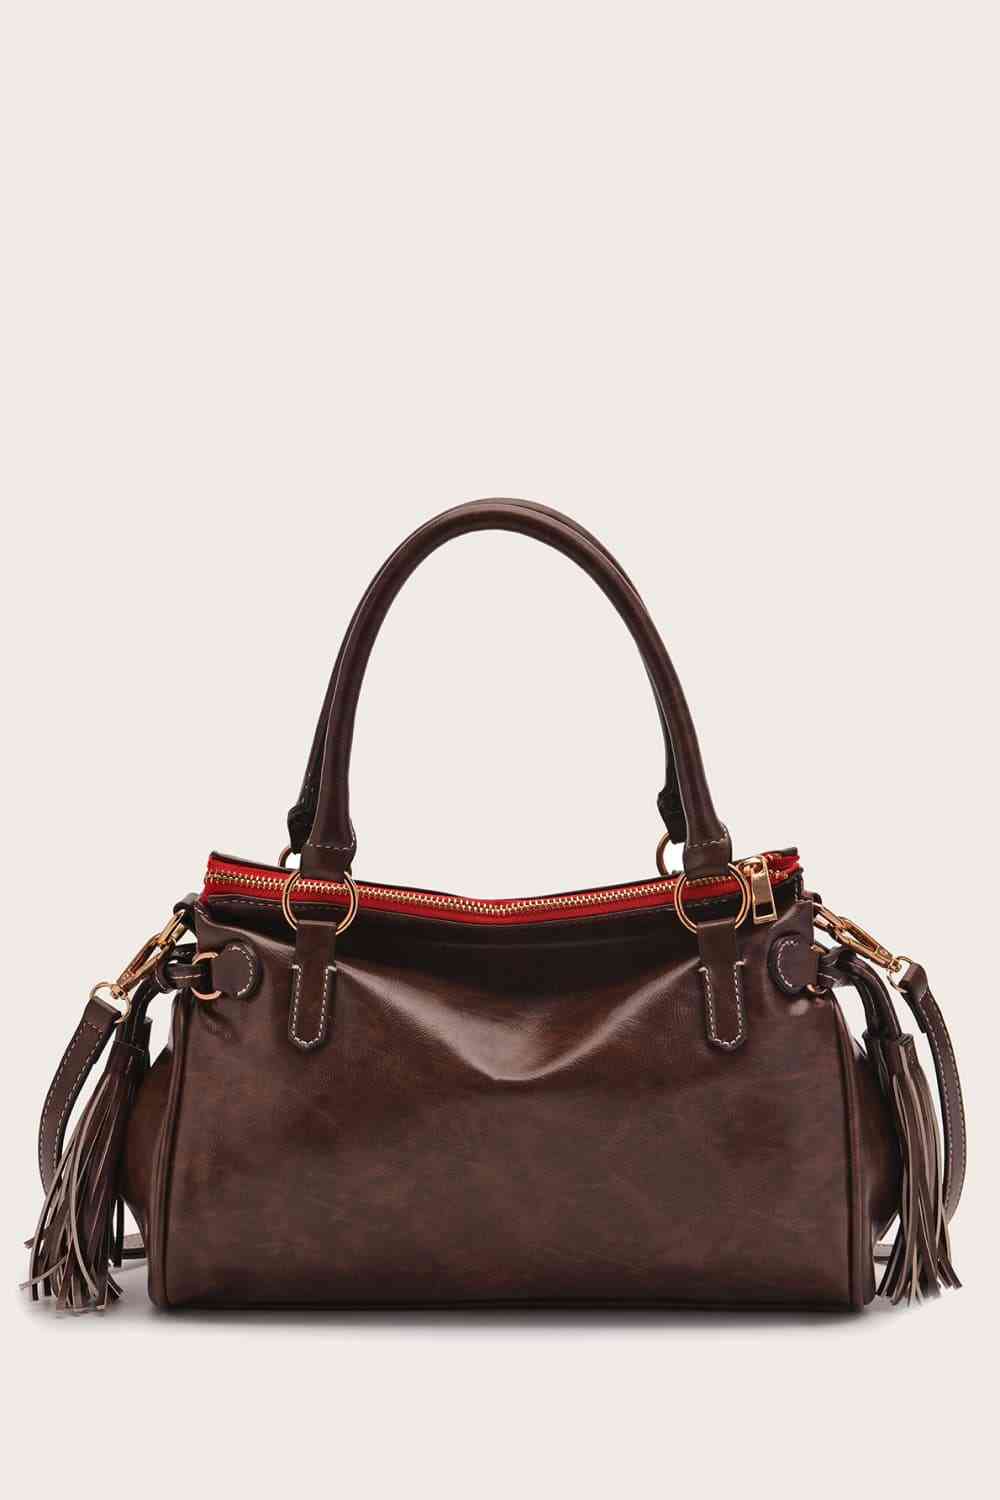 TEEK - However Handbag BAG TEEK Trend Coffee Brown  